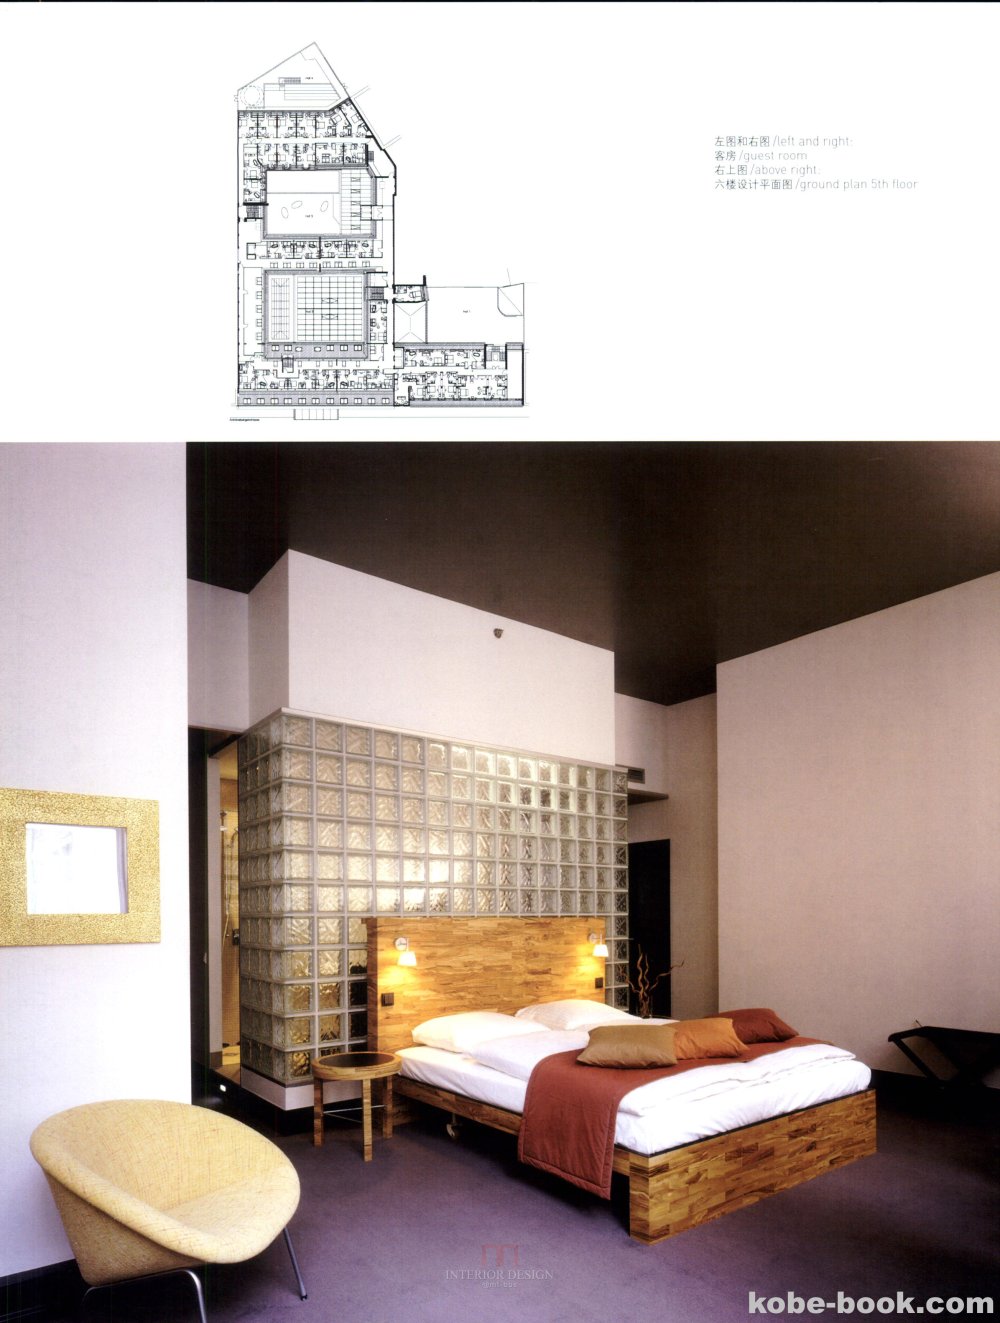 早期收集的酒店书籍资料，也行对一部人人来说陈旧了点_theme hotels主题酒店-0018.jpg